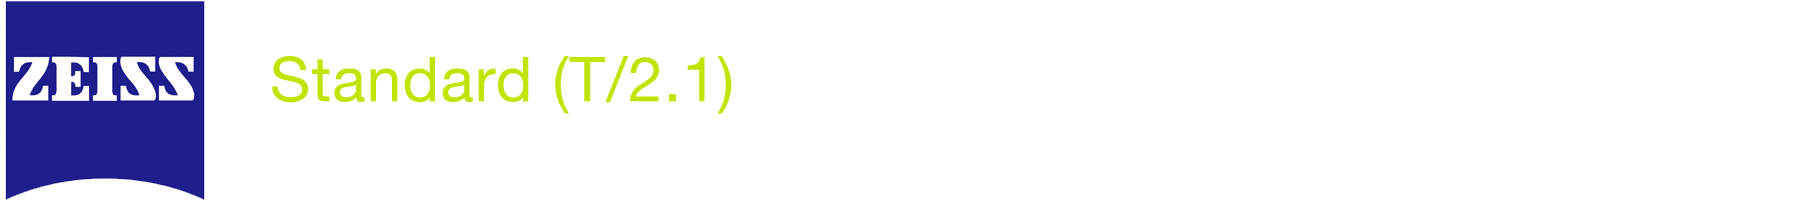 logo Zeiss Standard